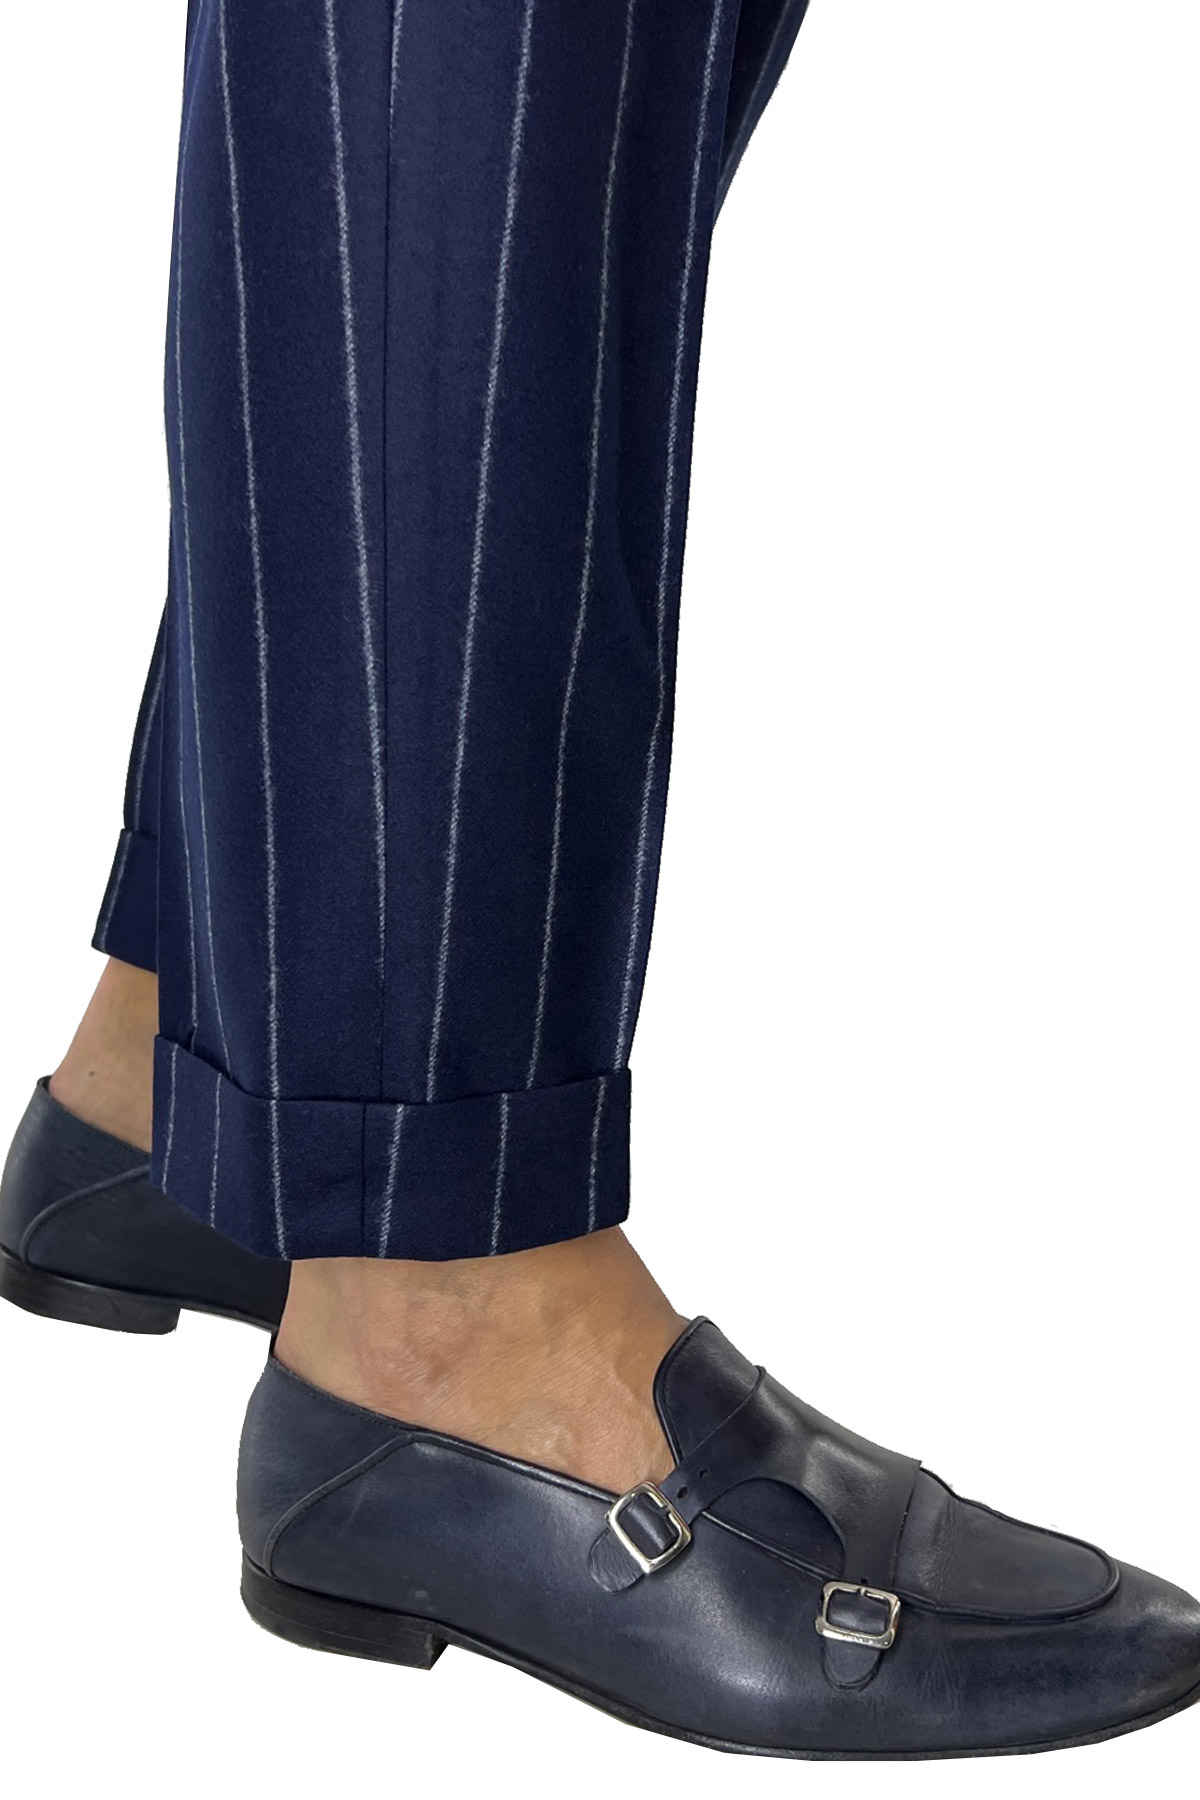 Pantalone uomo blu gessato grigio vita alta tasca america in lana flanella con doppia pinces Vitale Barberis Canonico